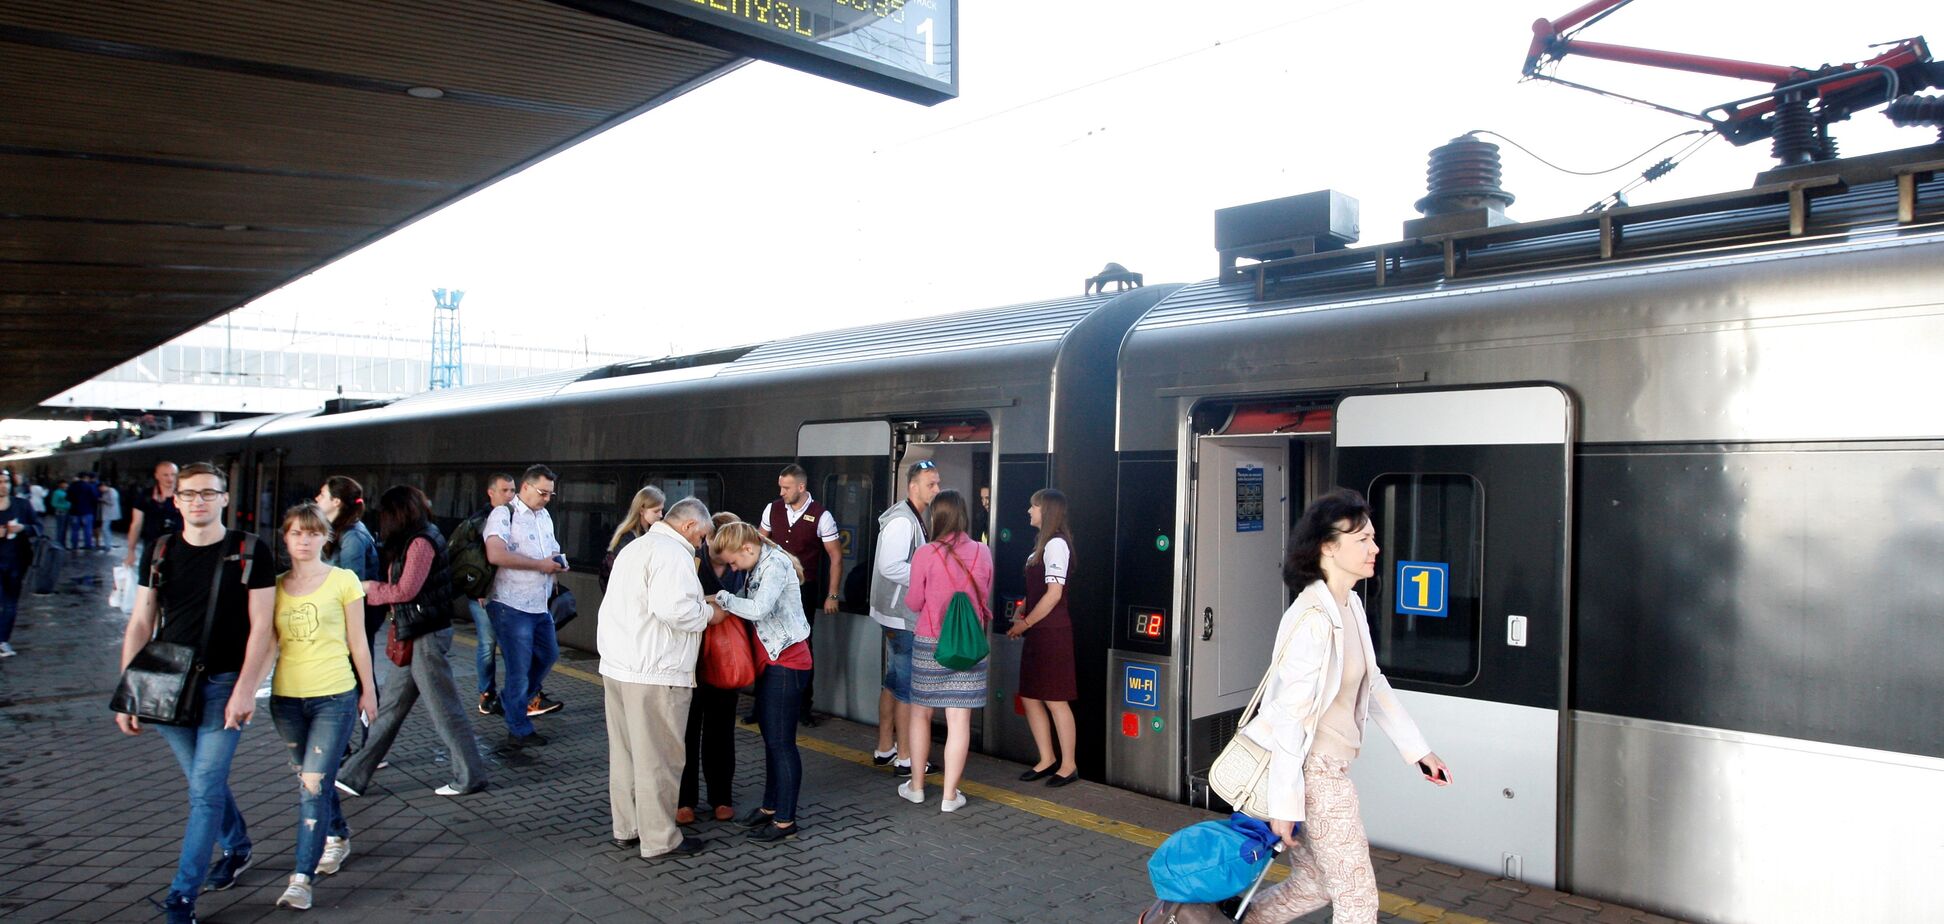 В Украине показали все поезда в Европу: опубликованы цены и расписание